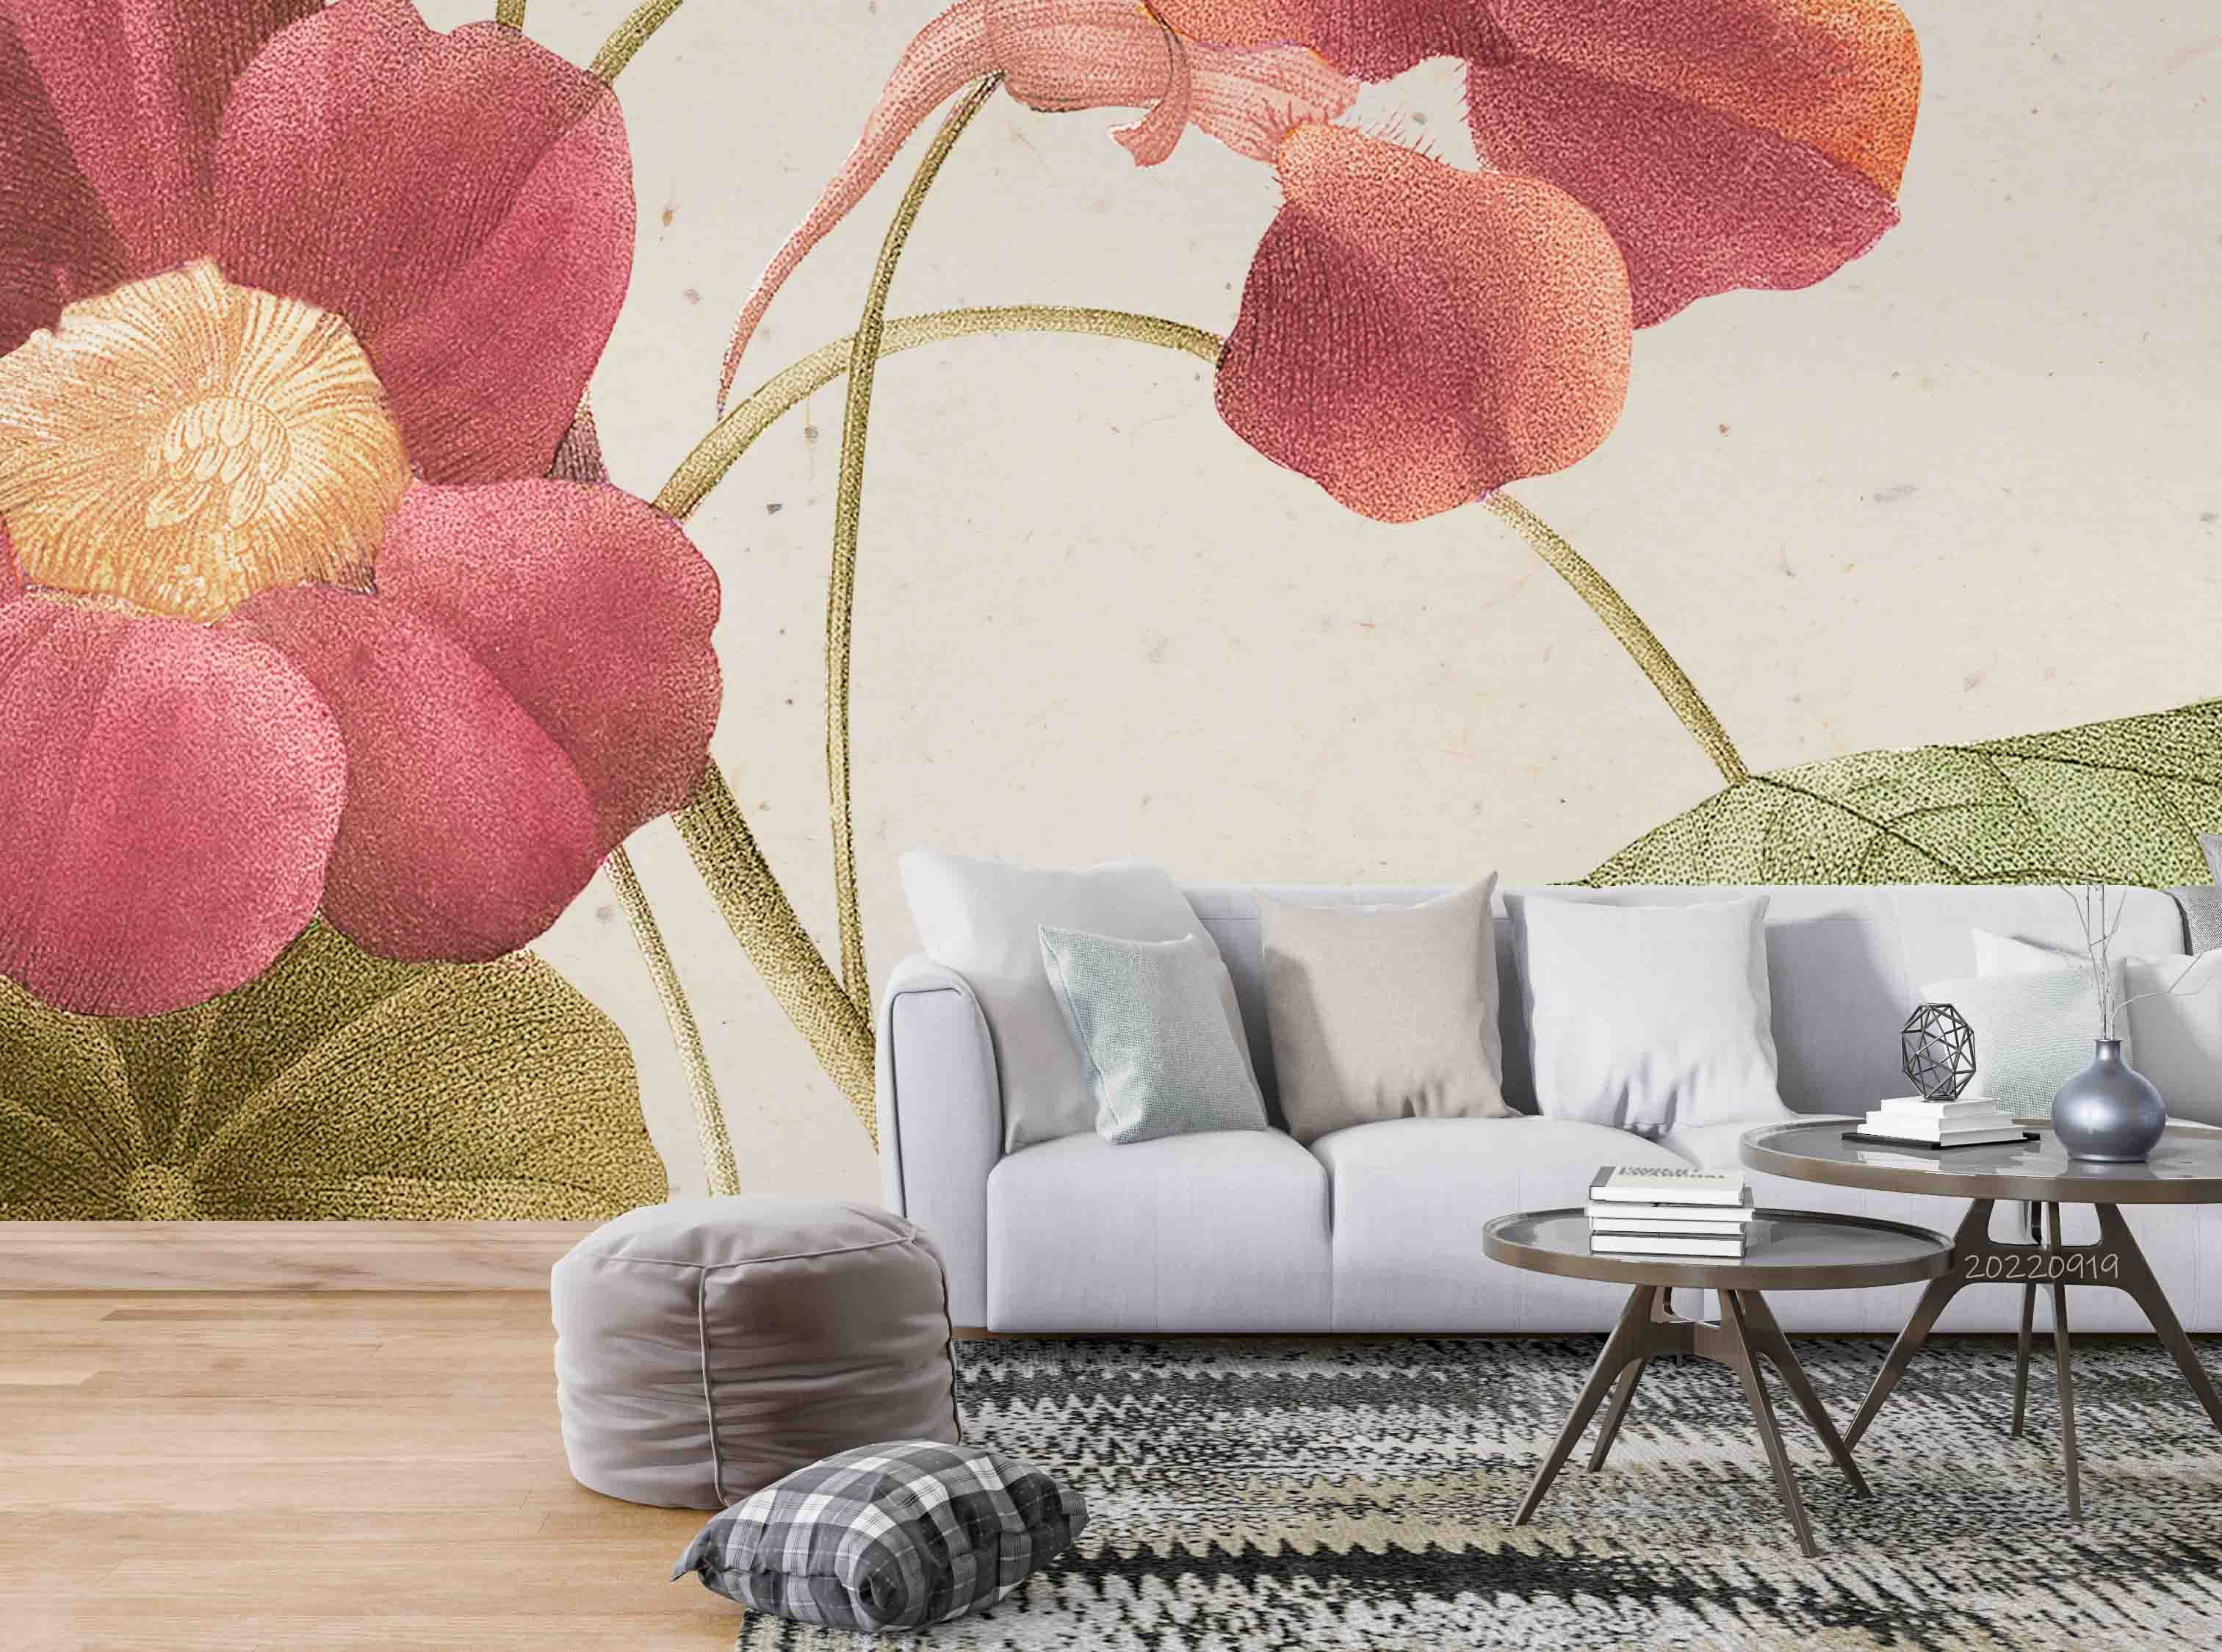 3D Vintage Spring Floral Leaf Background Wall Mural Wallpaper GD 3412- Jess Art Decoration